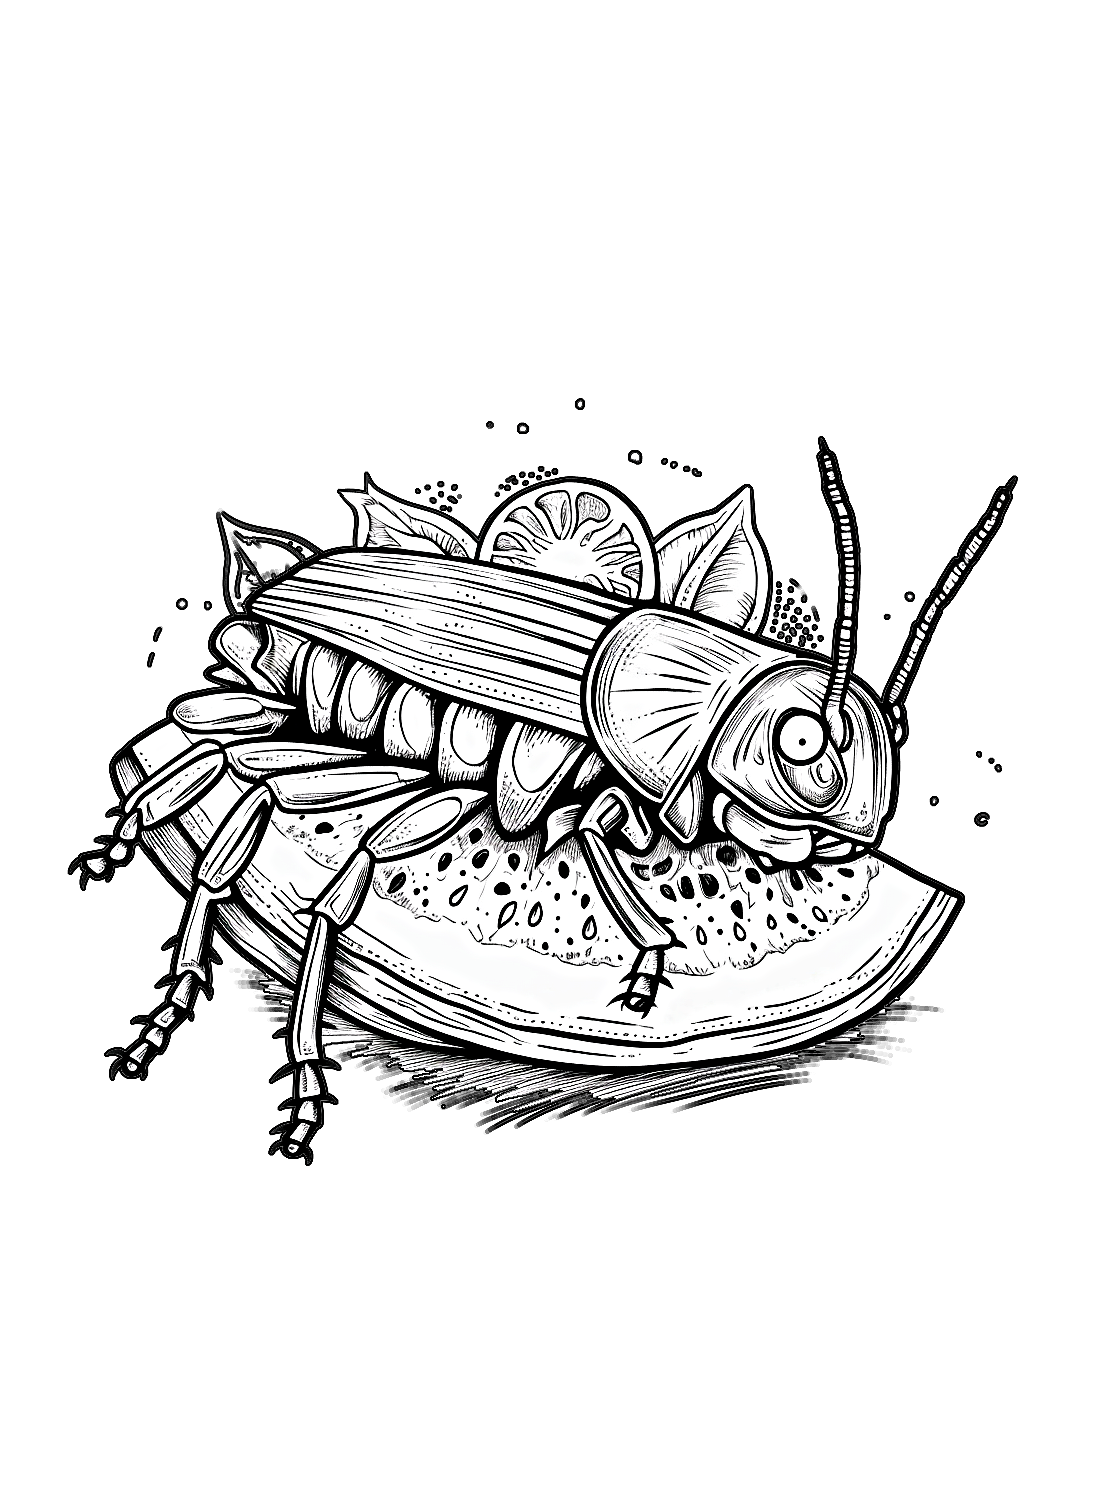 Una cucaracha y una sandía de Cucaracha.